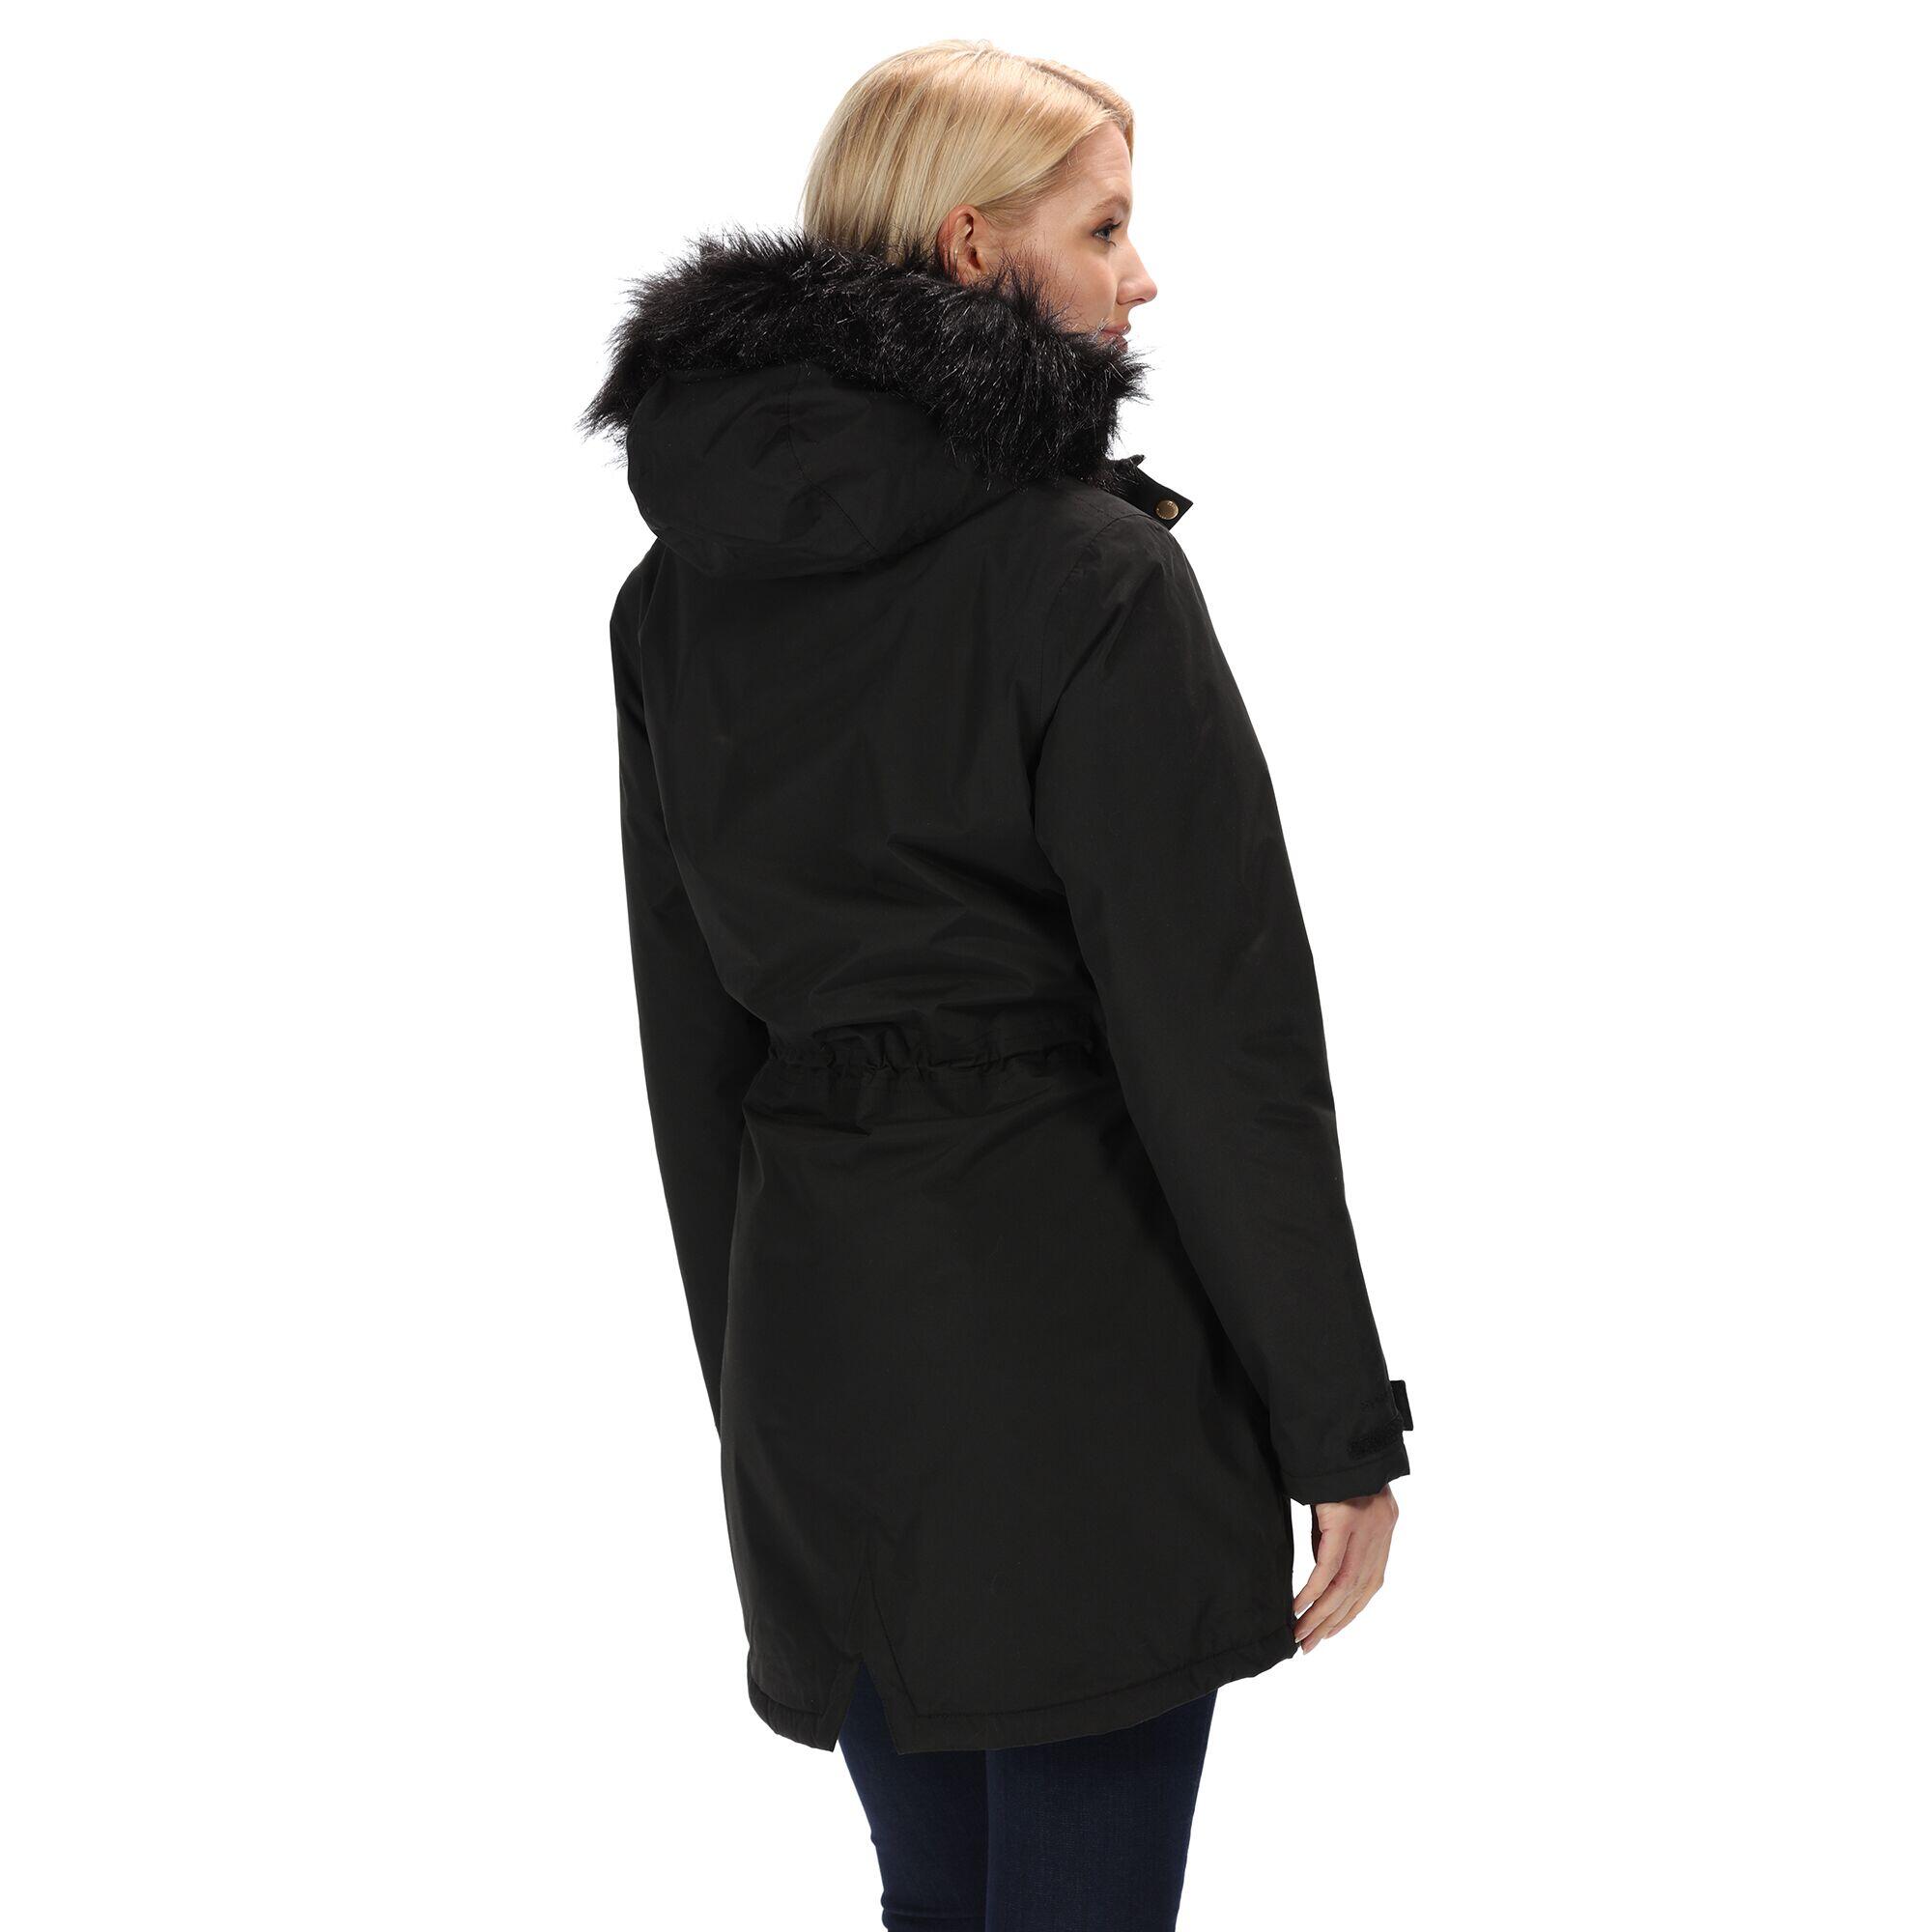 Womens/Ladies Serleena Fur Trimmed Waterproof Parka Jacket (Black) 4/5